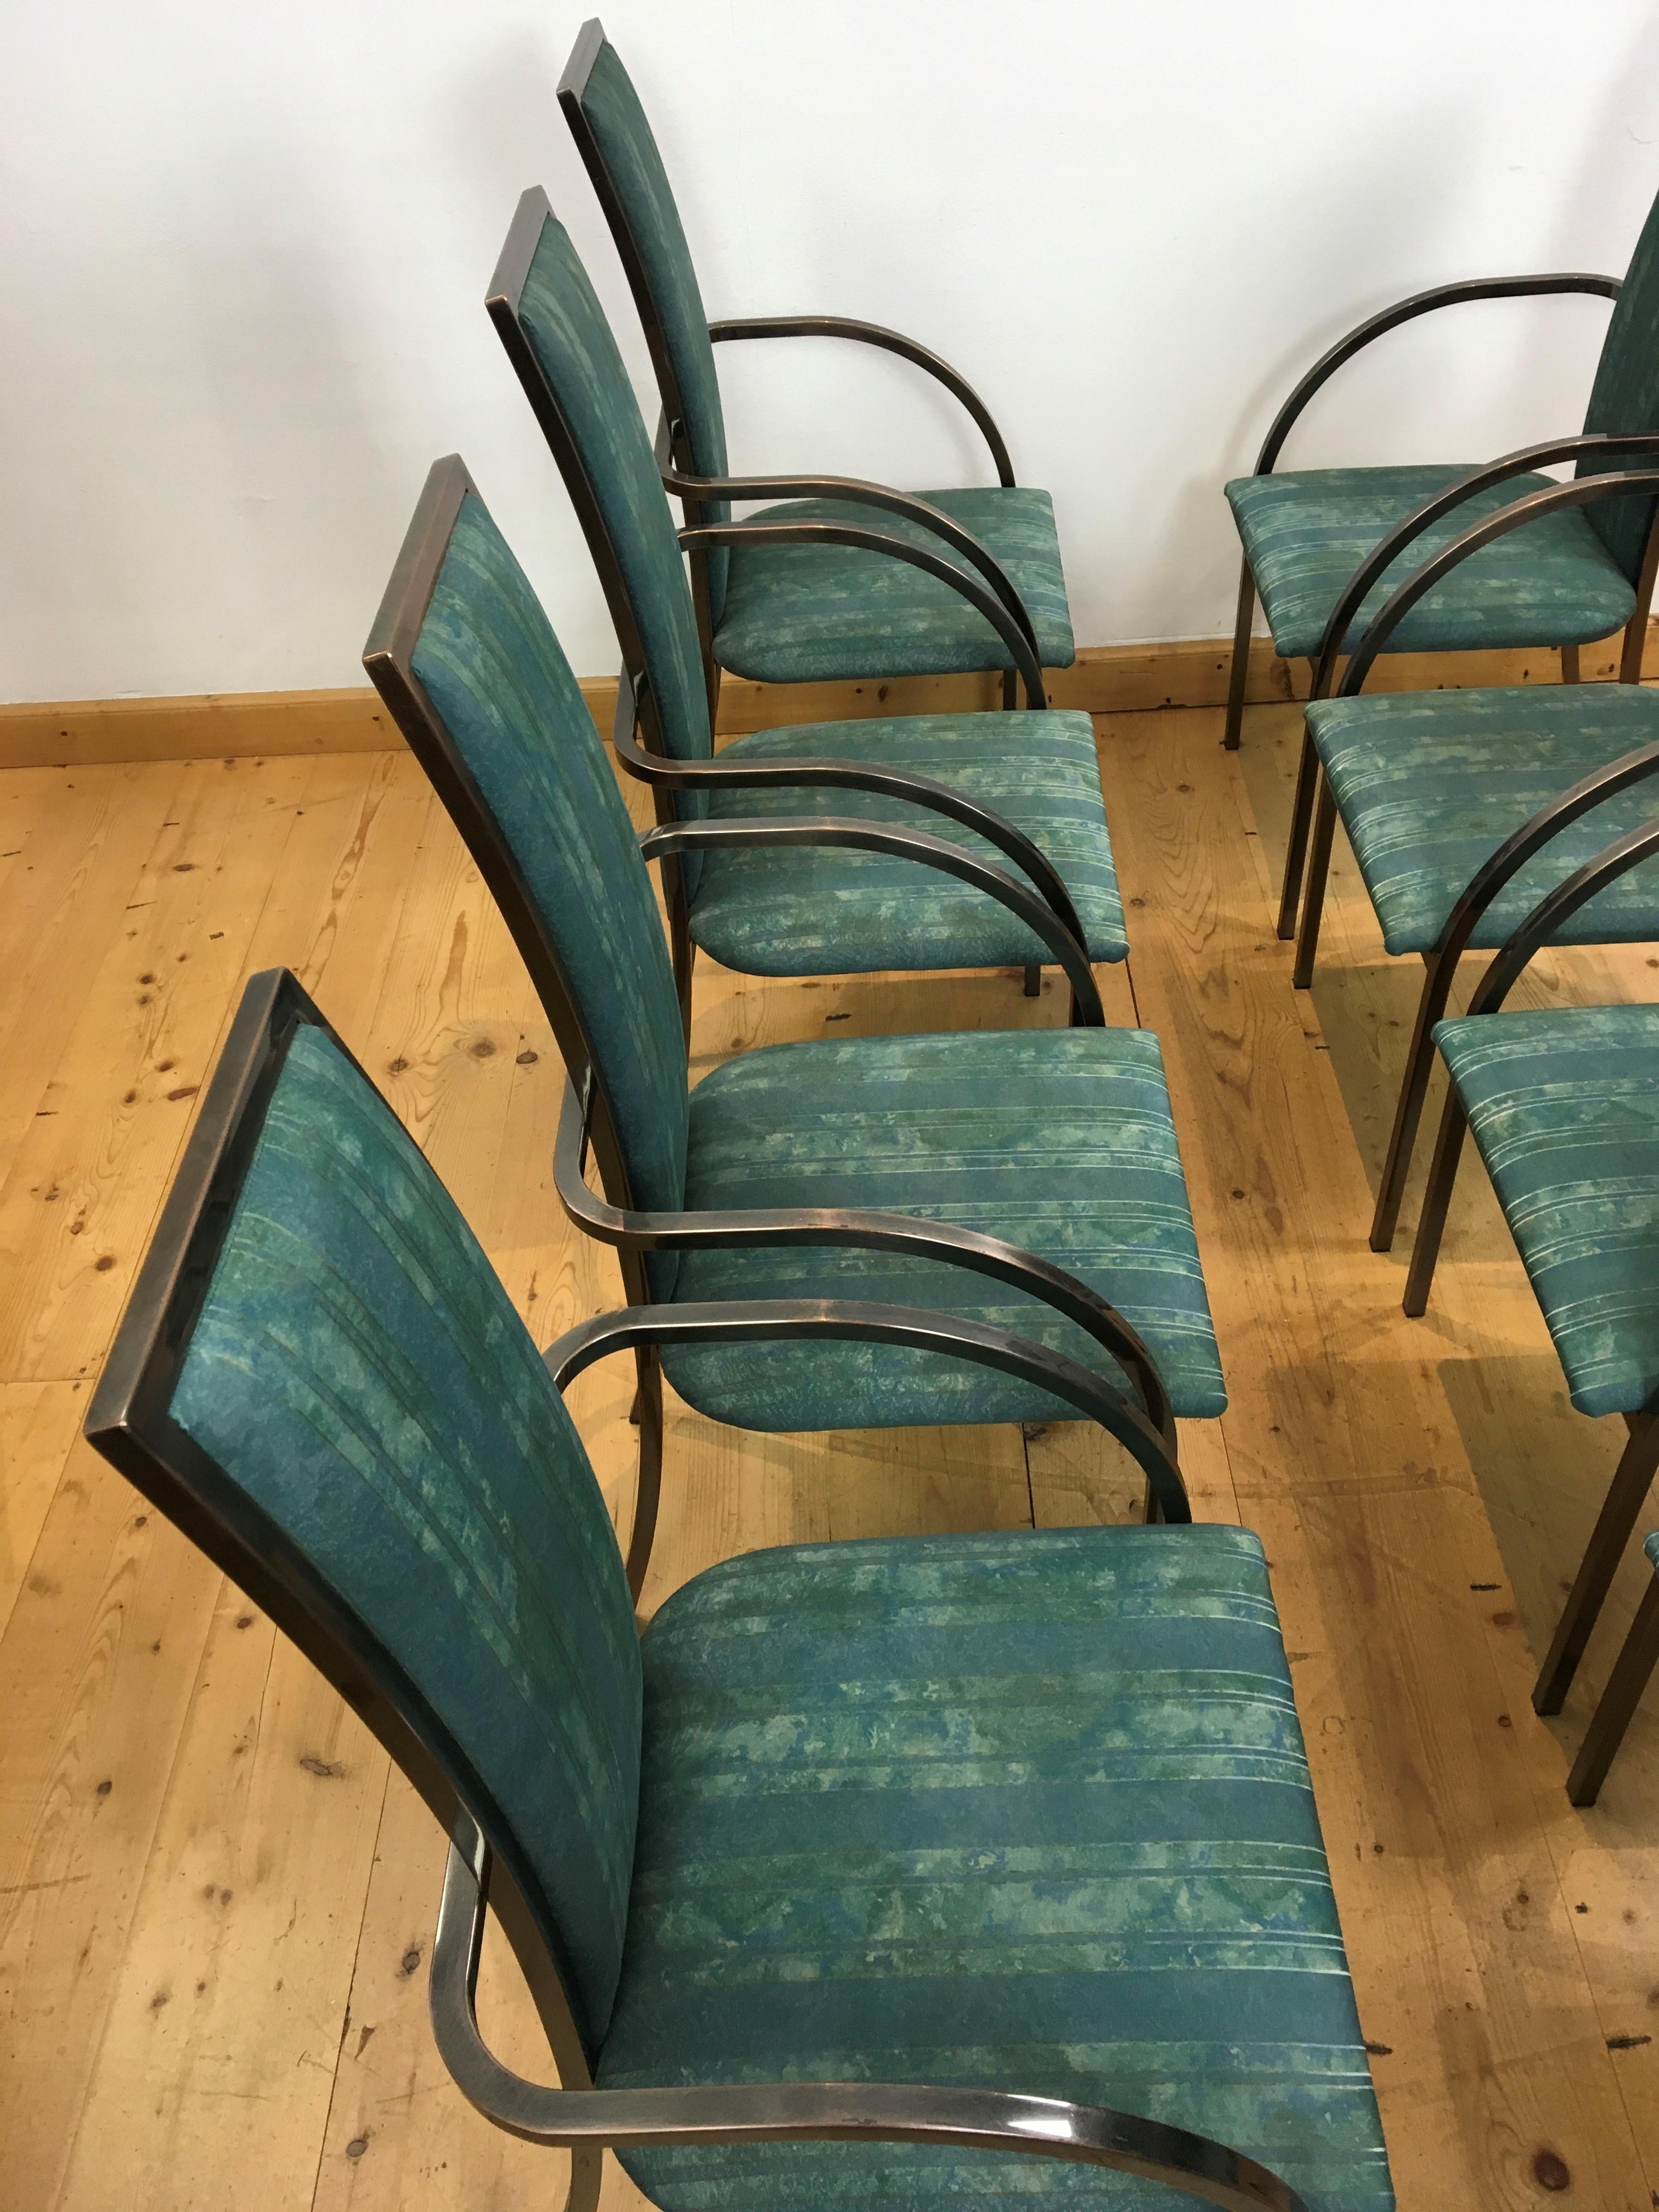 Satz von 8 Belgochrom - 8 grüne Belgo Chrome Esszimmerstühle. 
Sessel mit Gestell aus patiniertem, bronziertem Messing
und grün-blauer Original-Polsterung. Der grün-blaue Stoffbezug hat ein gemischtes Muster aus Farben und Streifen. 

Die